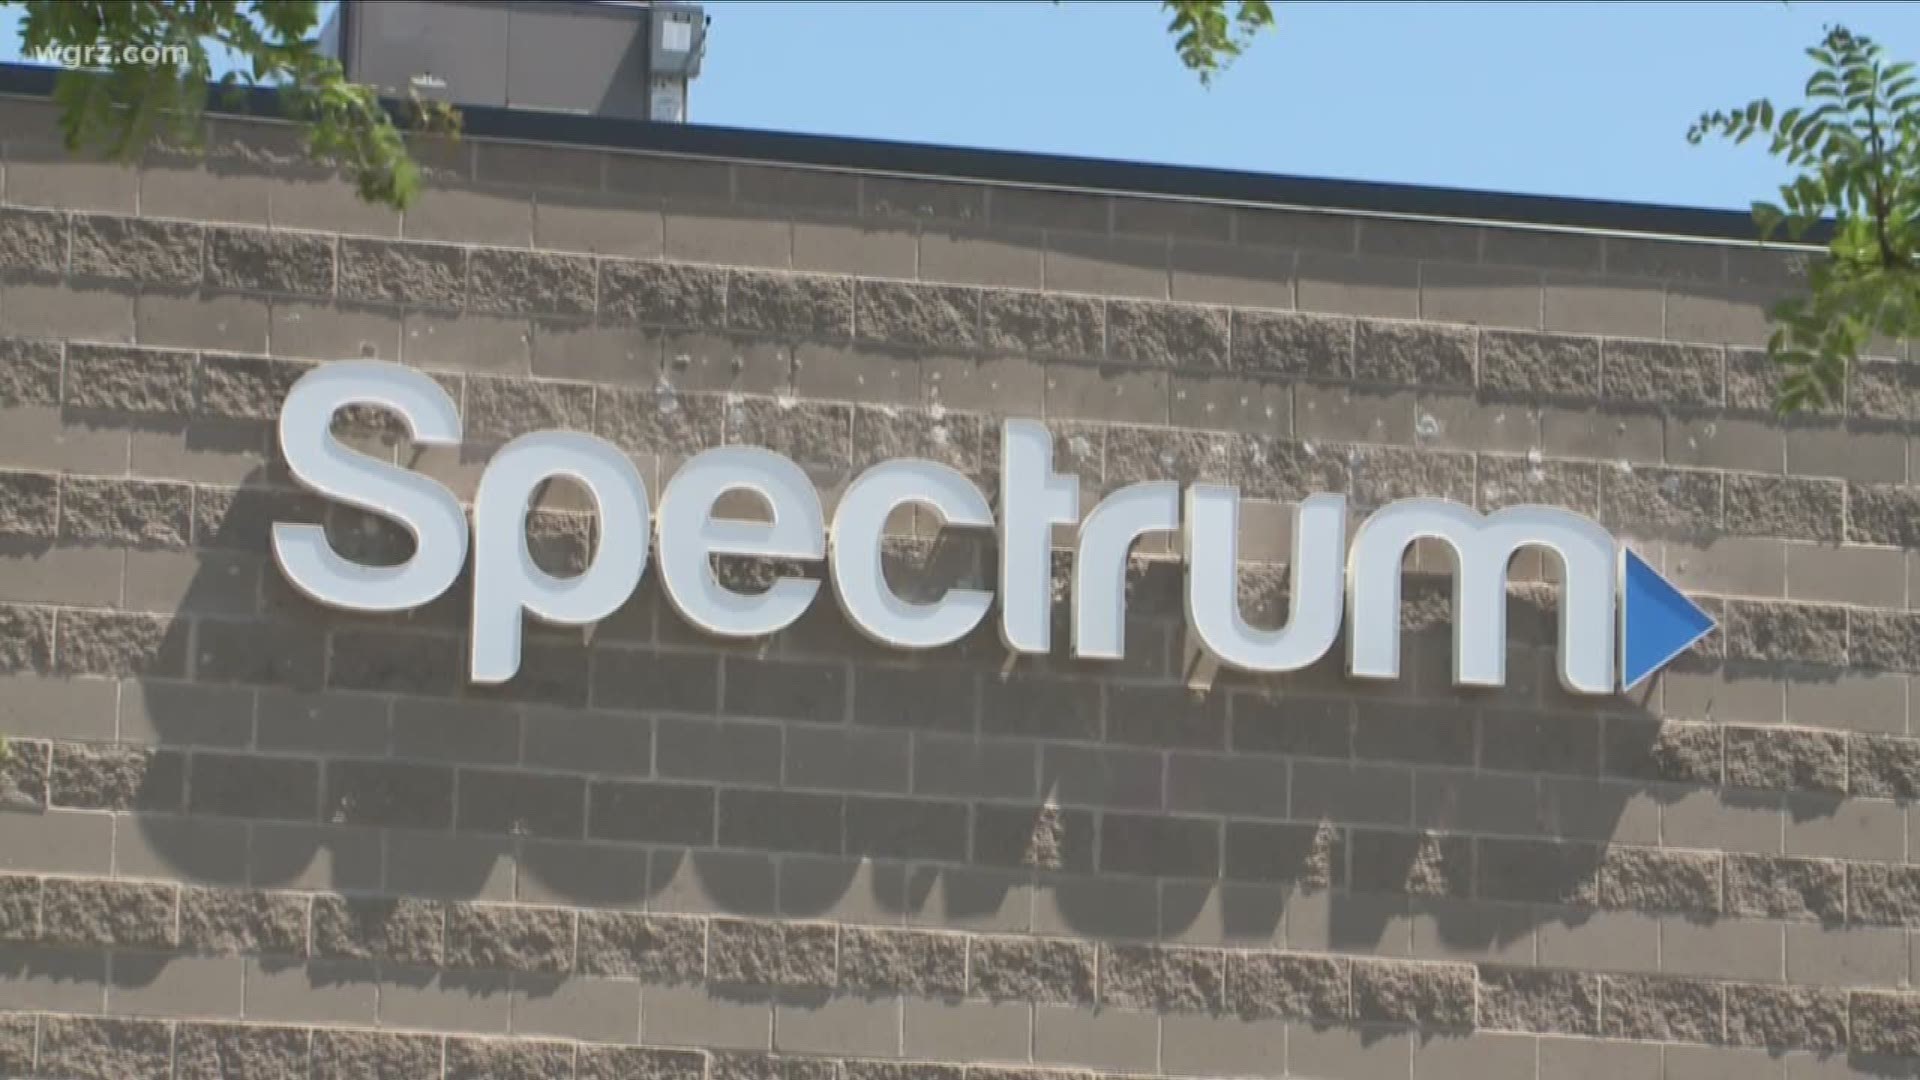 Spectrum Also Raising Rates For Internet